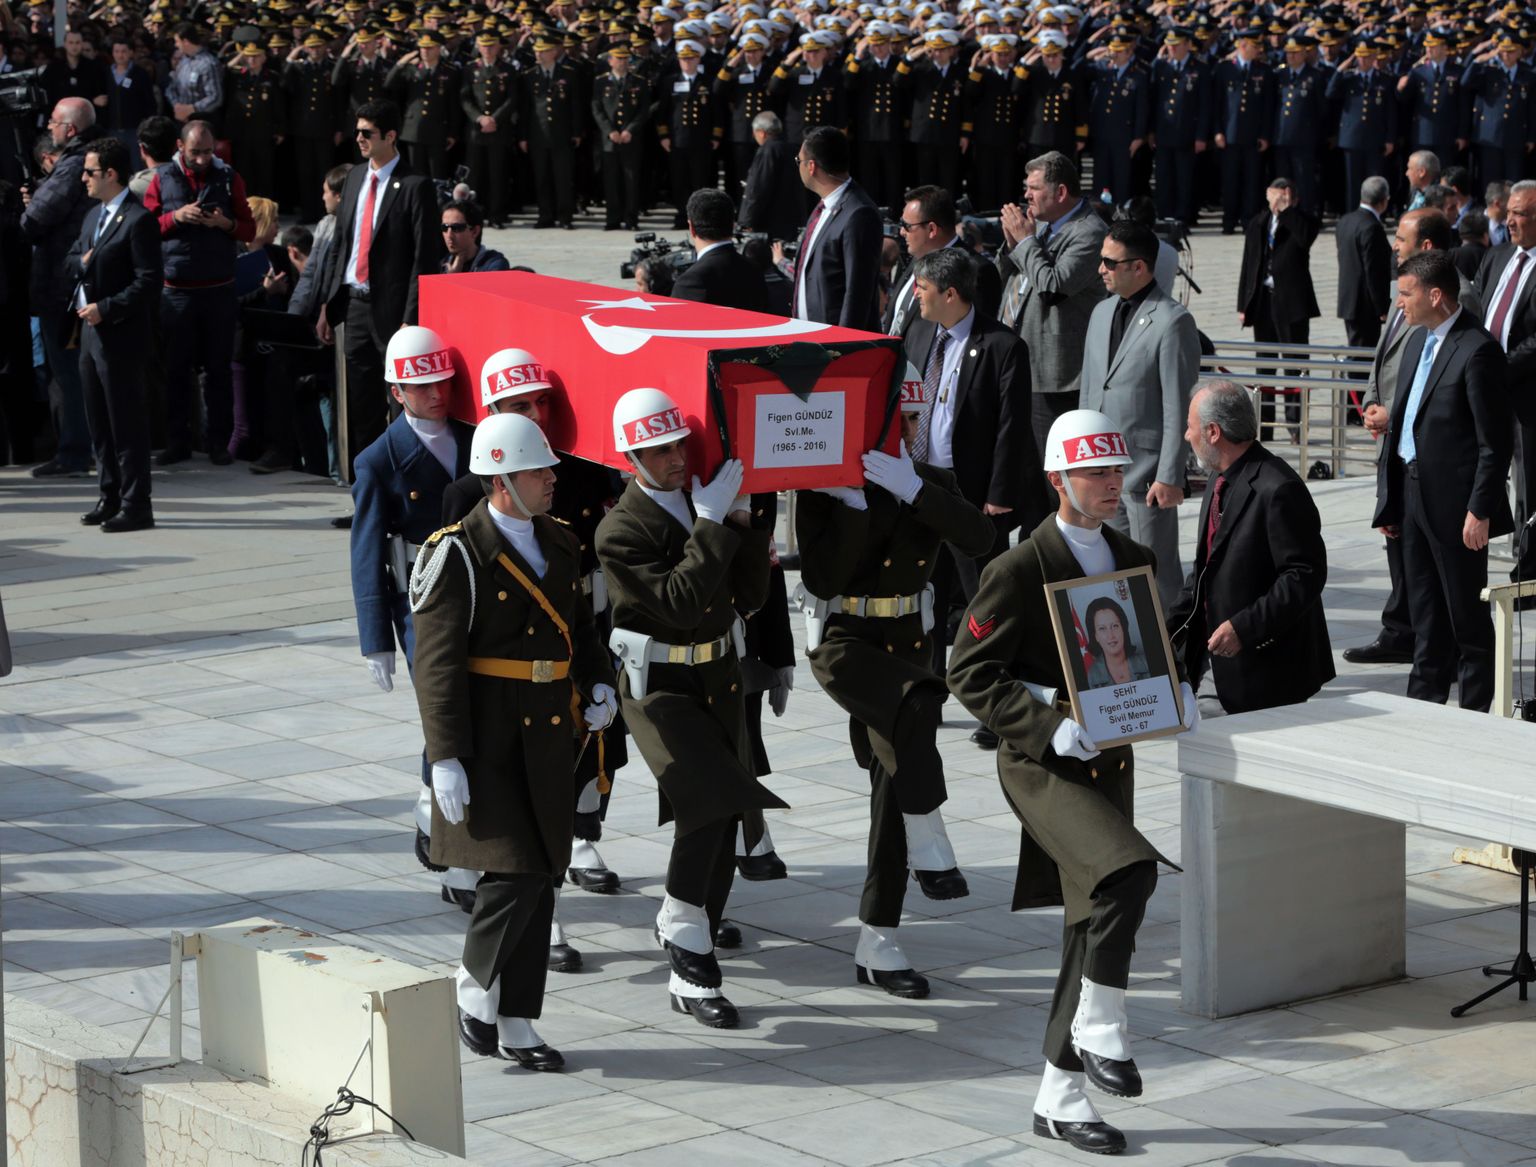 Kolmapäeval Ankaras toimunud rünnakus hukkunu matusetseremoonia. Türgi võimud süüdistavad pommirünnakus Süüria kurde.